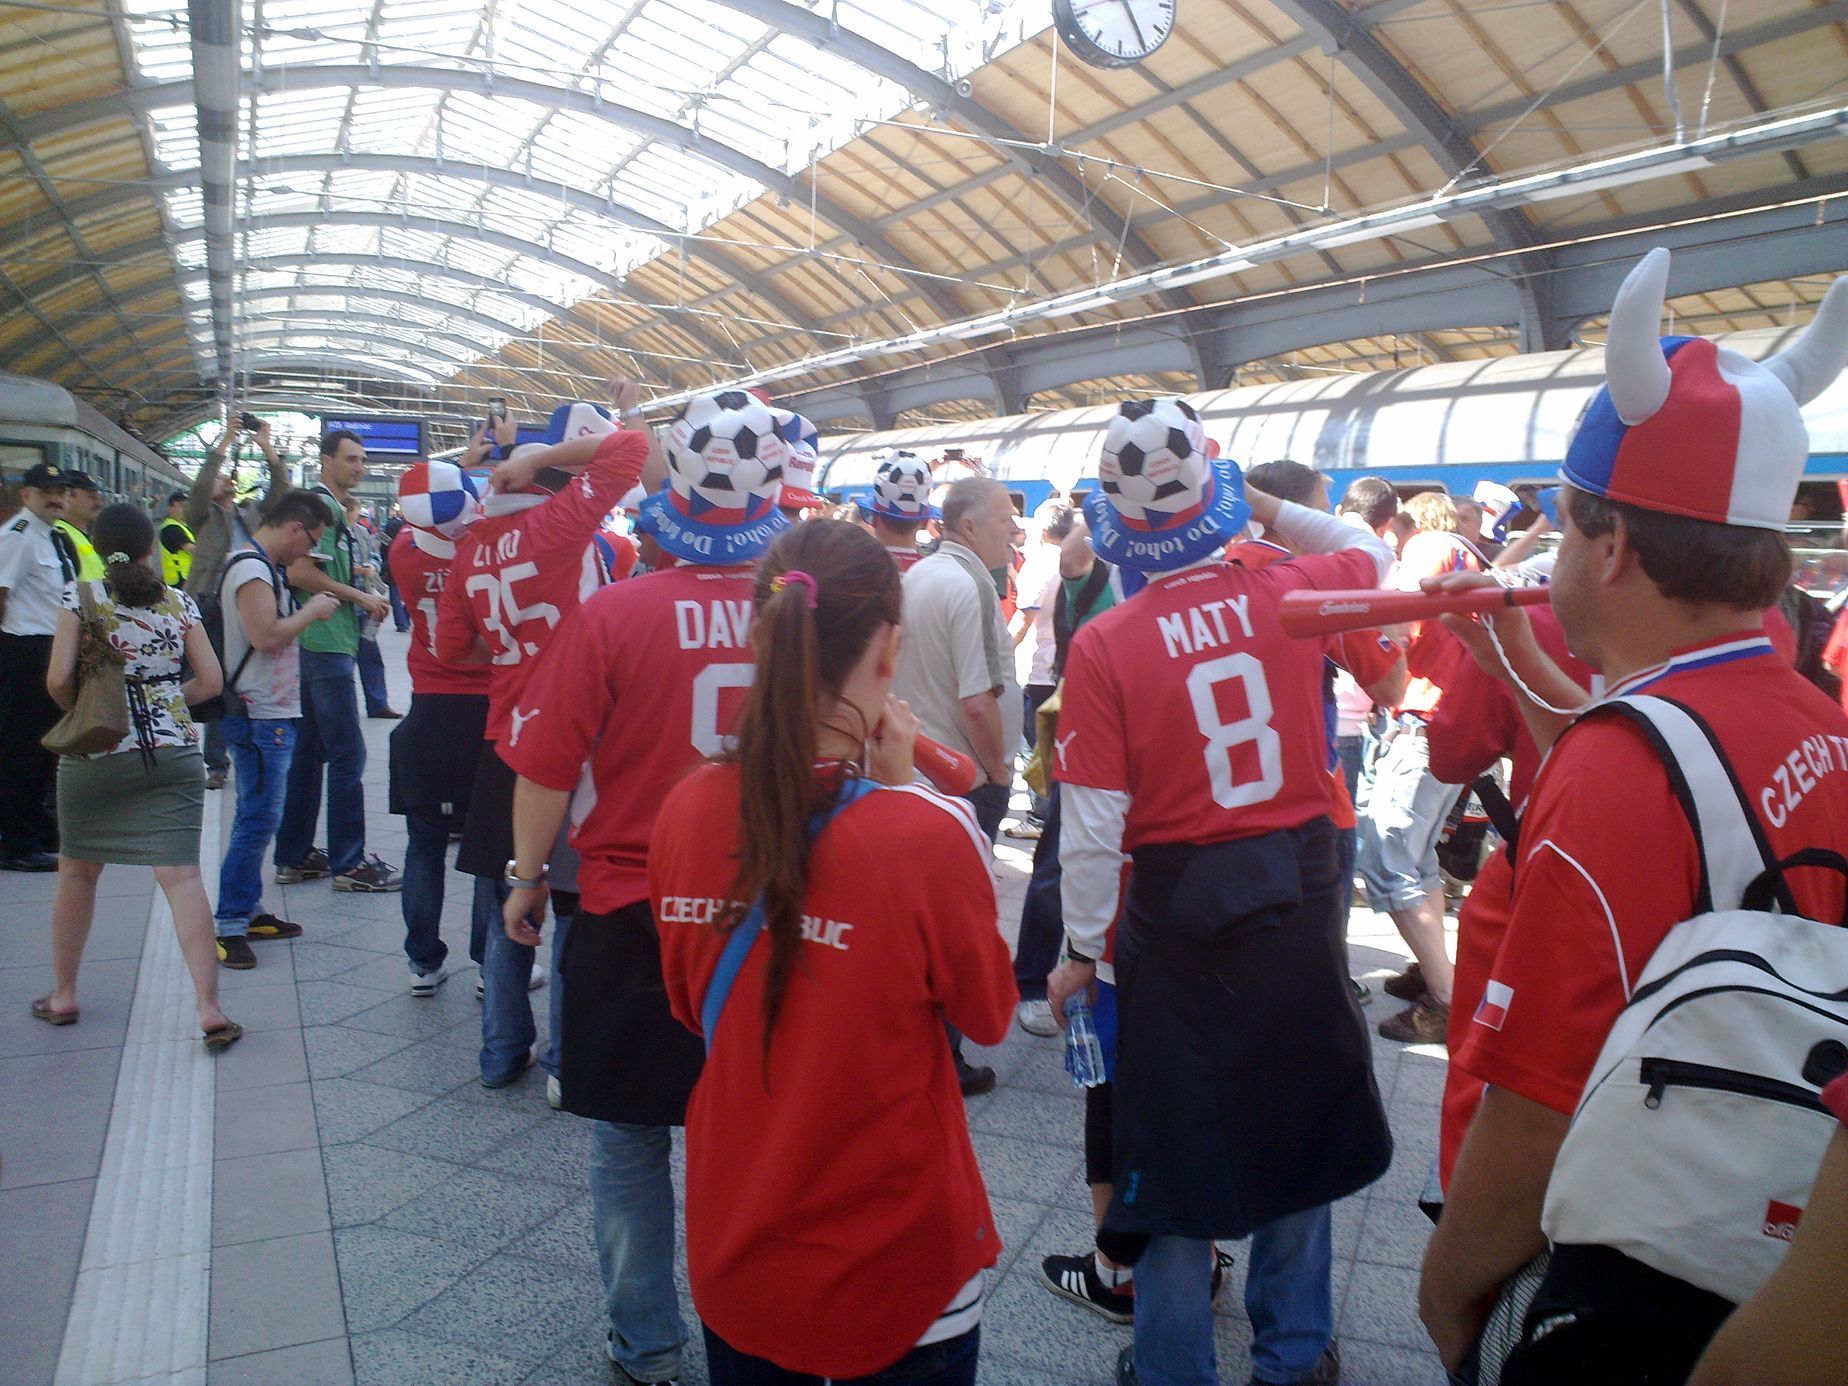 Čeští fanoušci před odjezdem do Vratislavi během prvního dne Eura 2012.